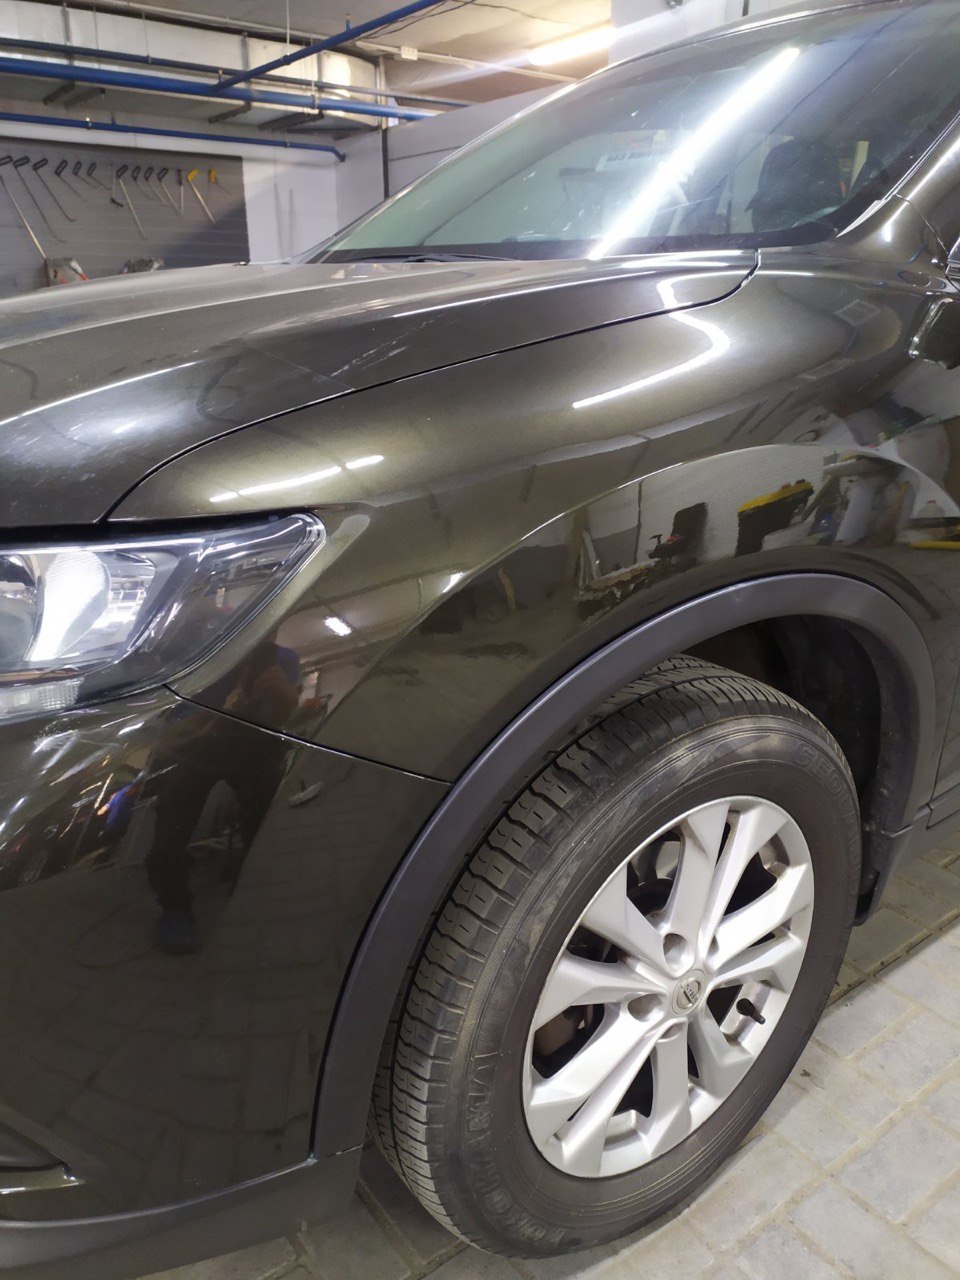 Удаление вмятин без покраски авто в Харькове по доступной цене